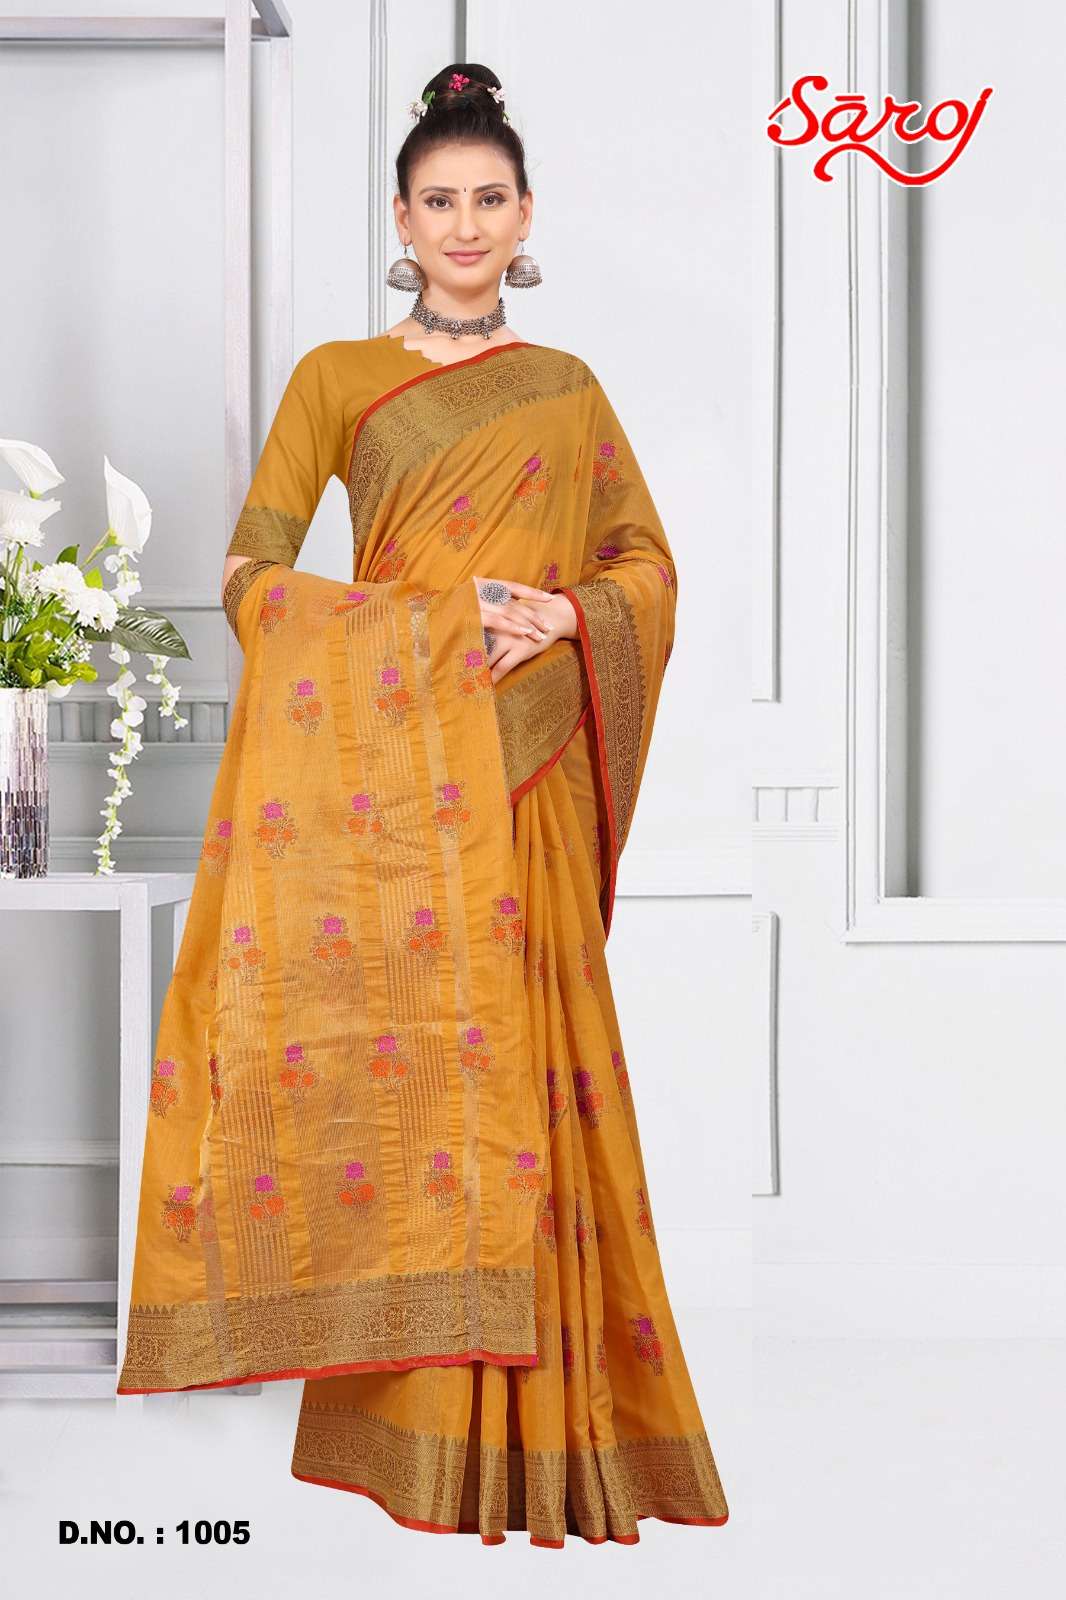 Saroj textile presents Shandaar vol-1 Cotton Designer sarees catalogue